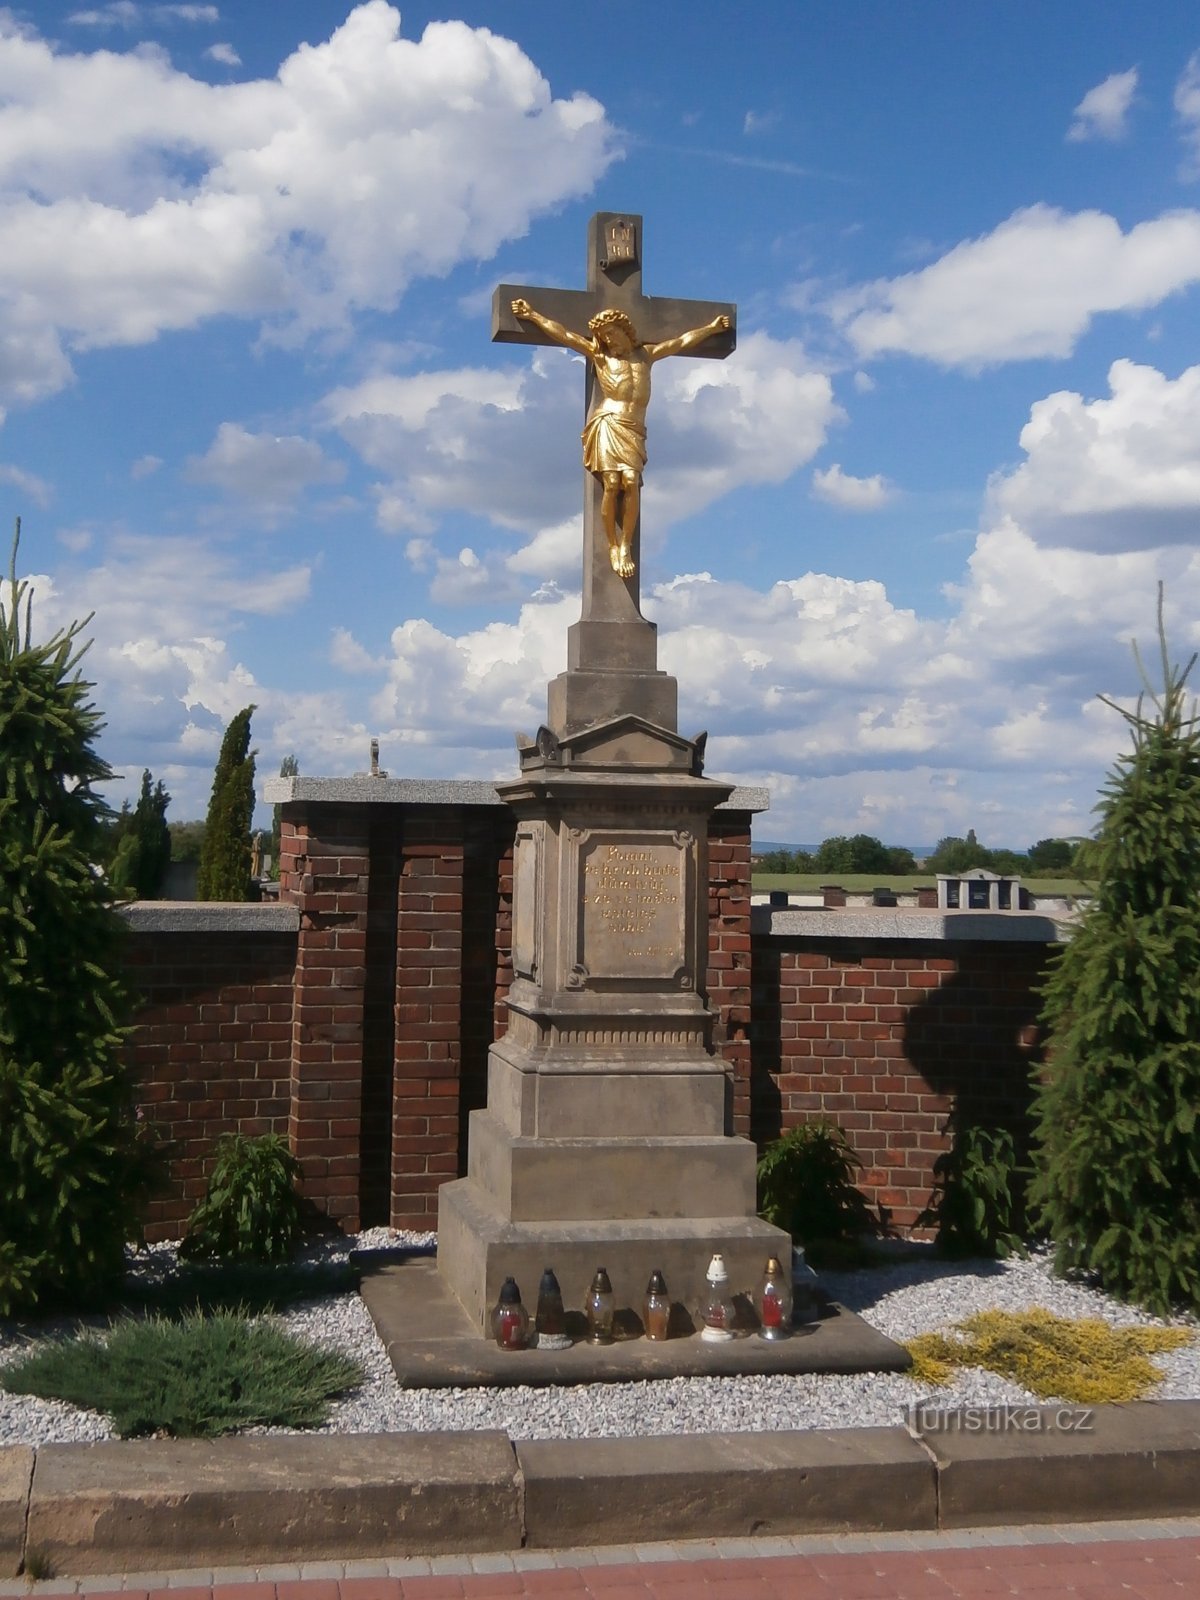 Thập giá nghĩa trang (Lochenice, 10.6.2017)